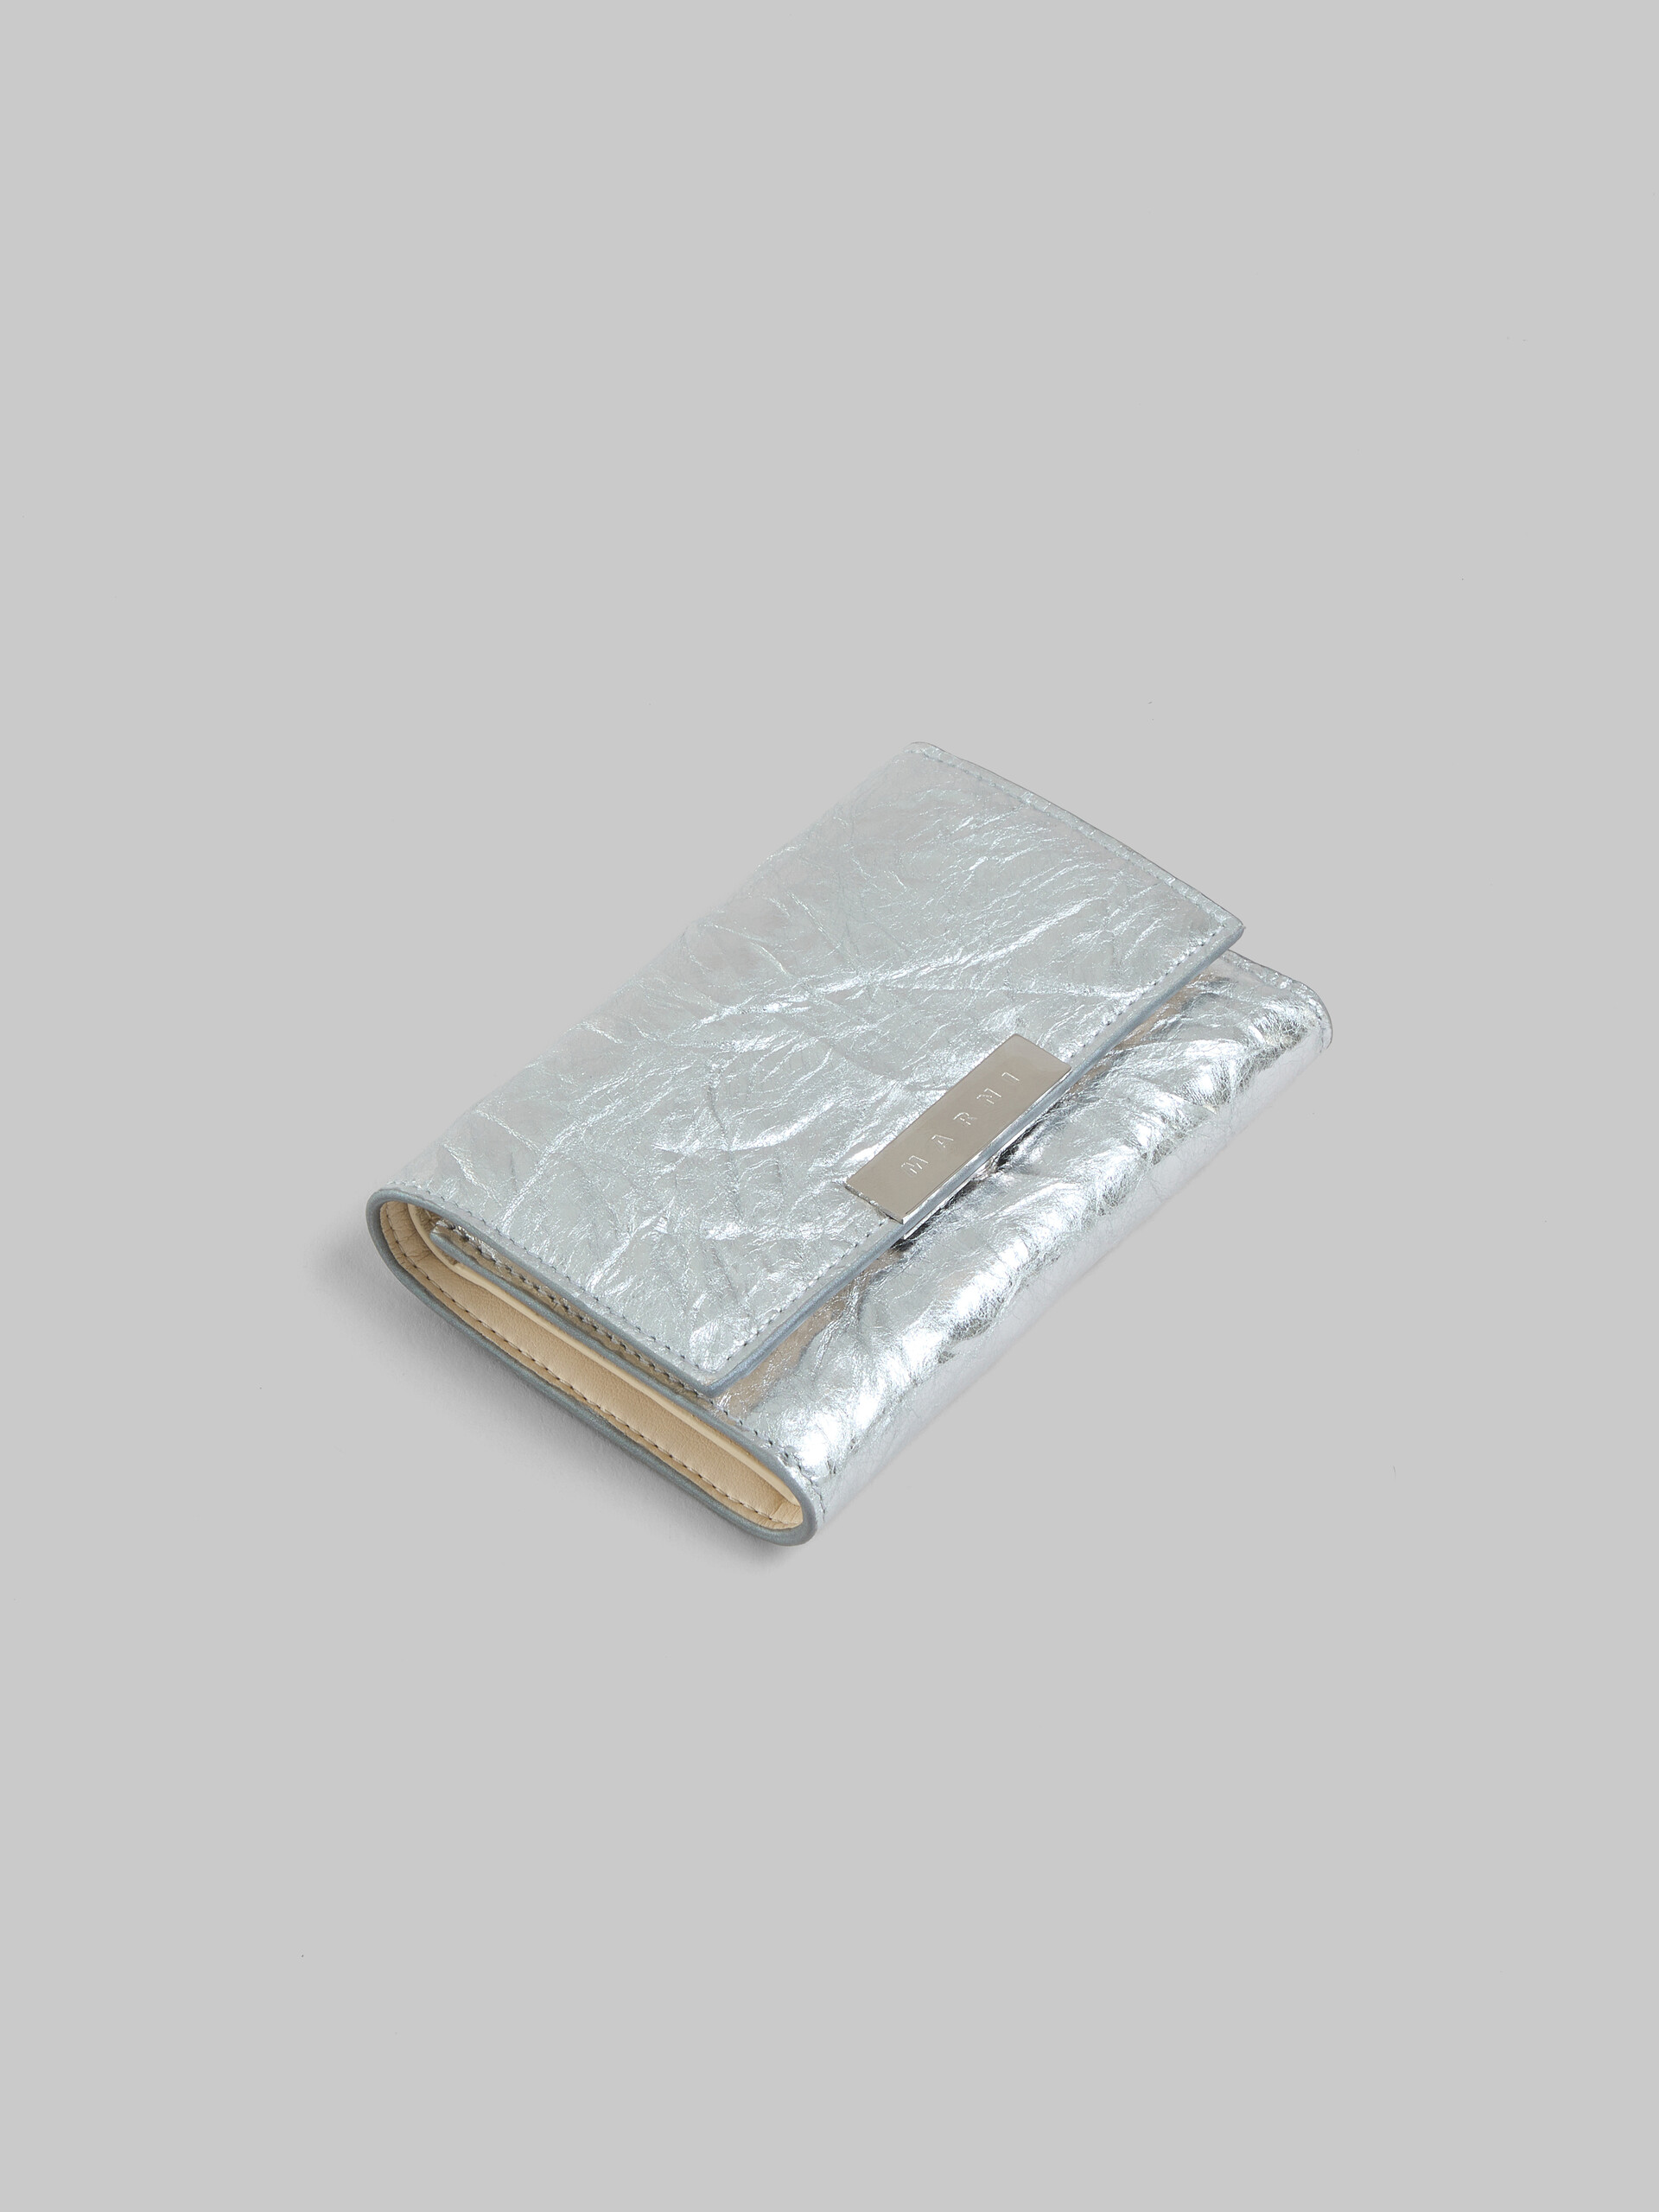 Dreifache Faltbrieftasche Prisma aus Leder in Silber - Brieftaschen - Image 5